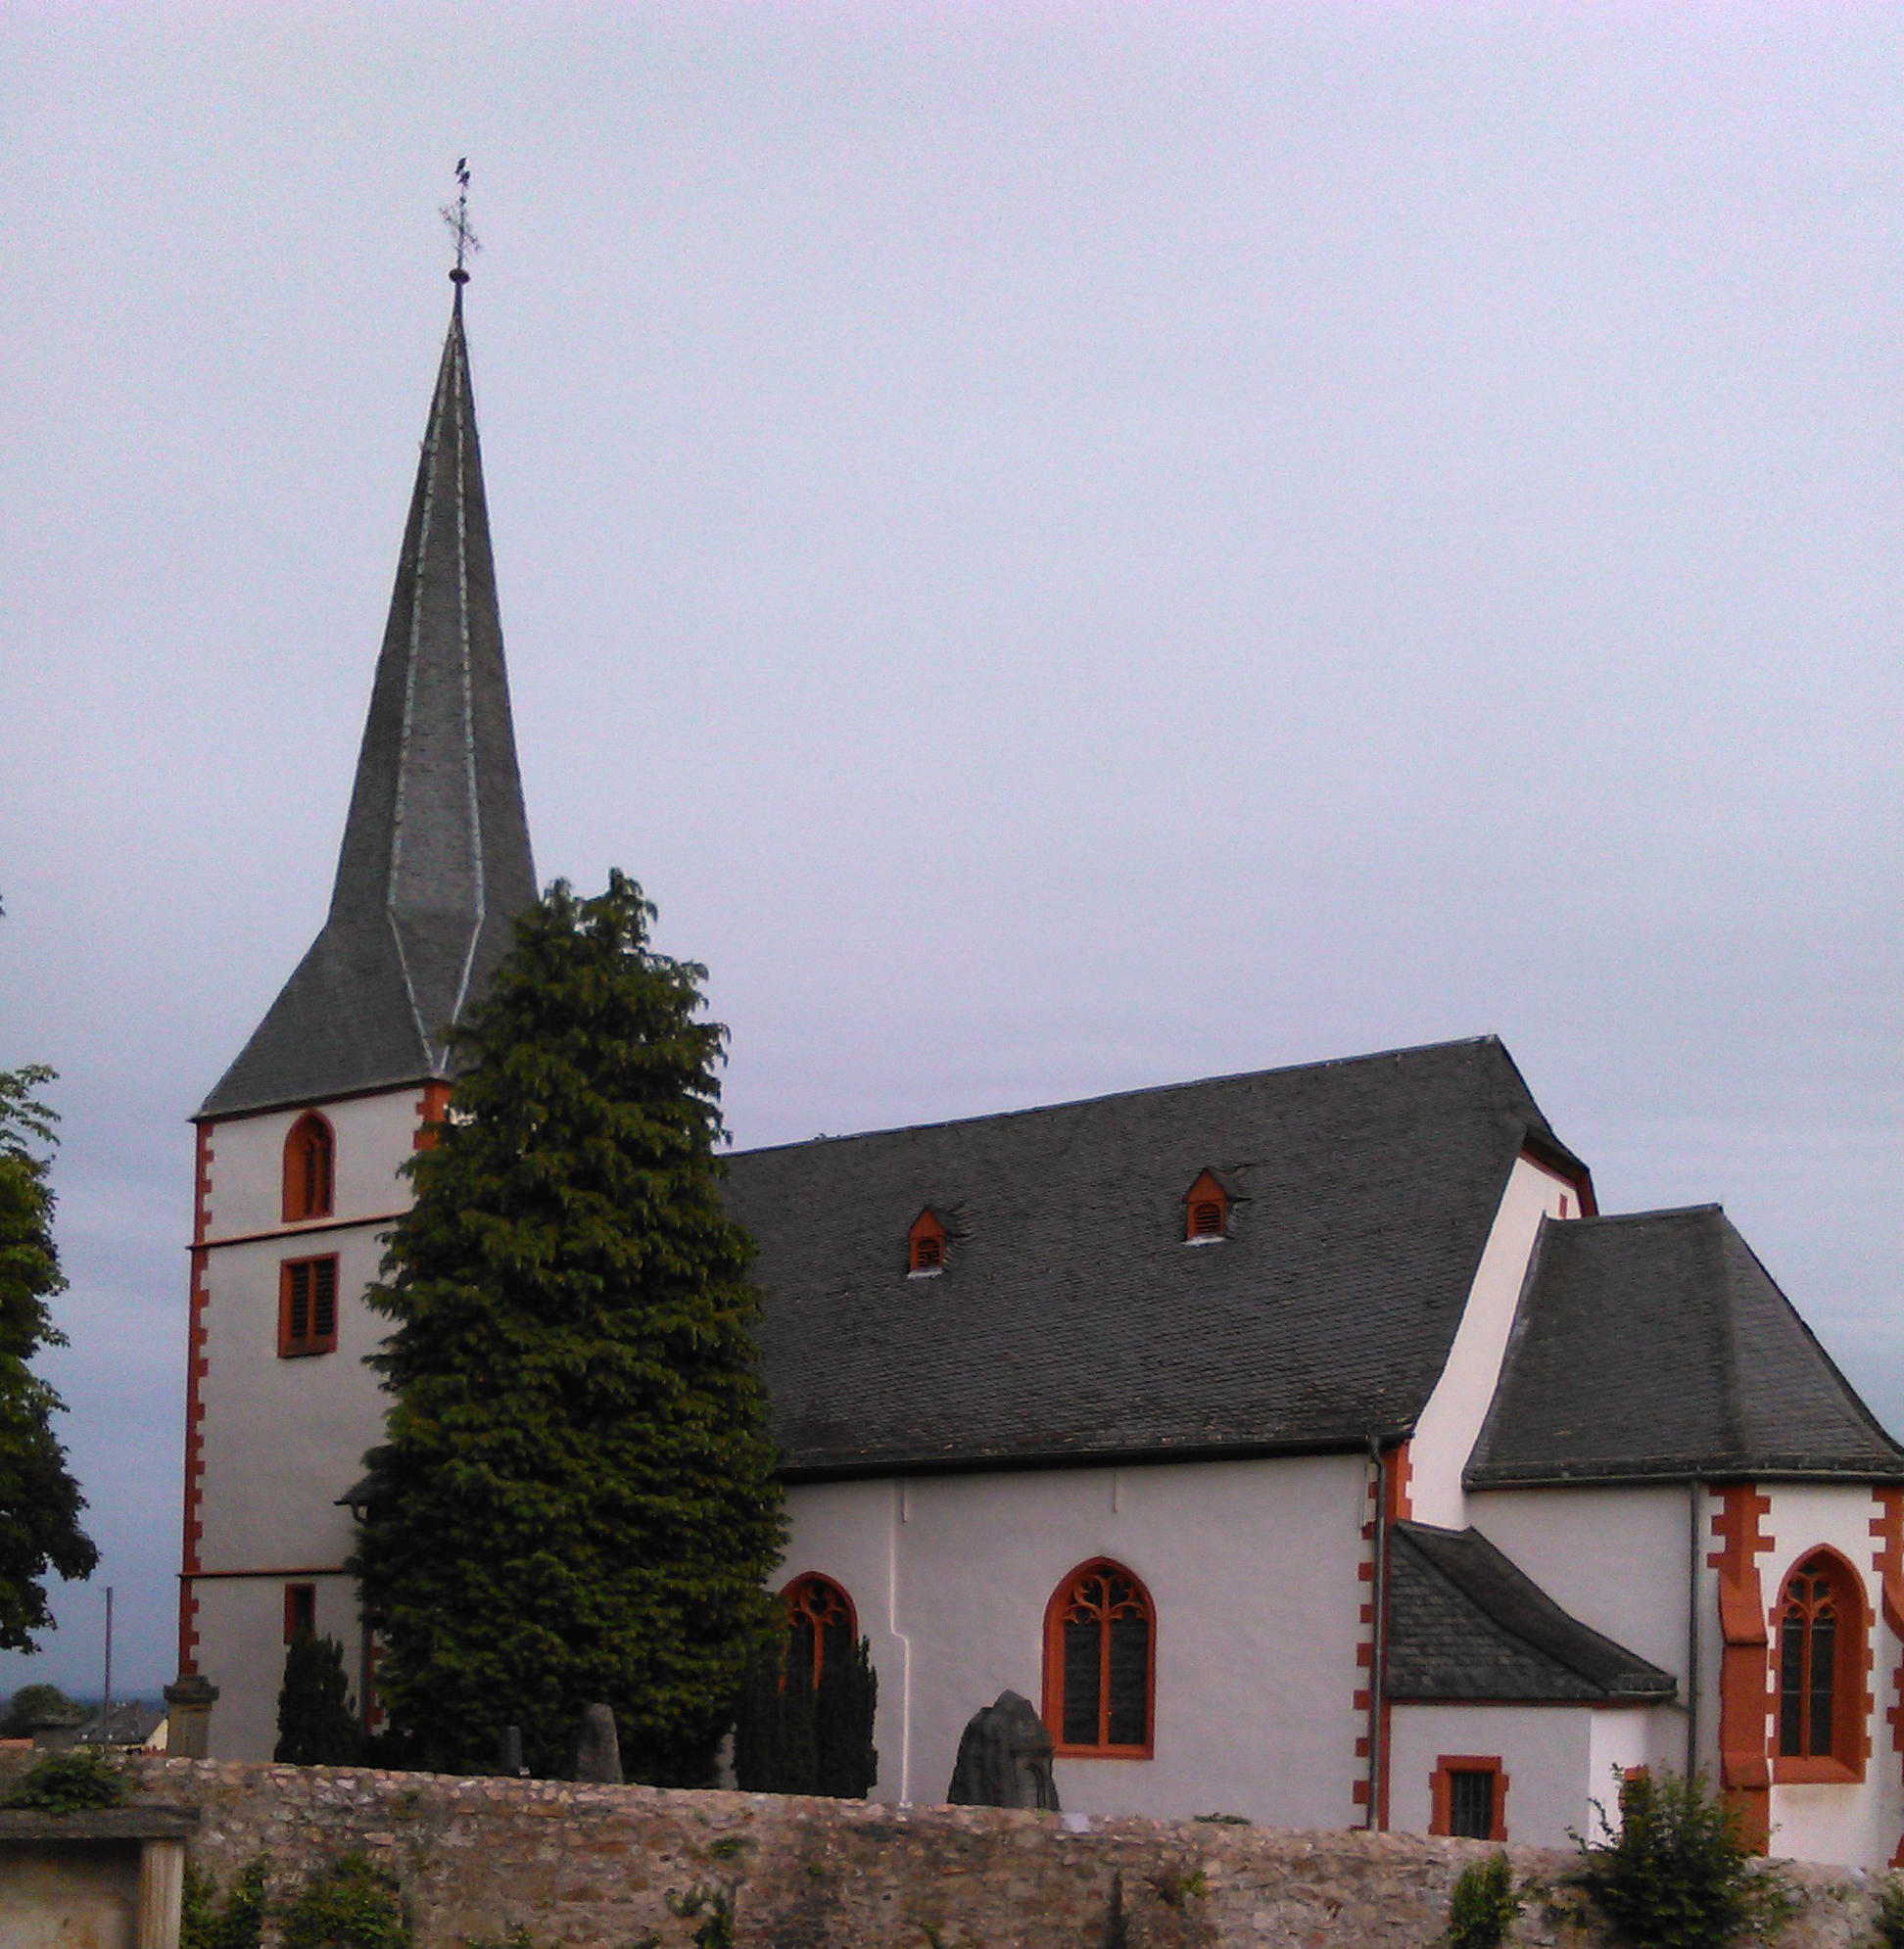 Bild 1 Evangelische Bergkirche Bensheim-Auerbach - Evangelische Kirchengemeinde Bensheim-Auerbach in Bensheim